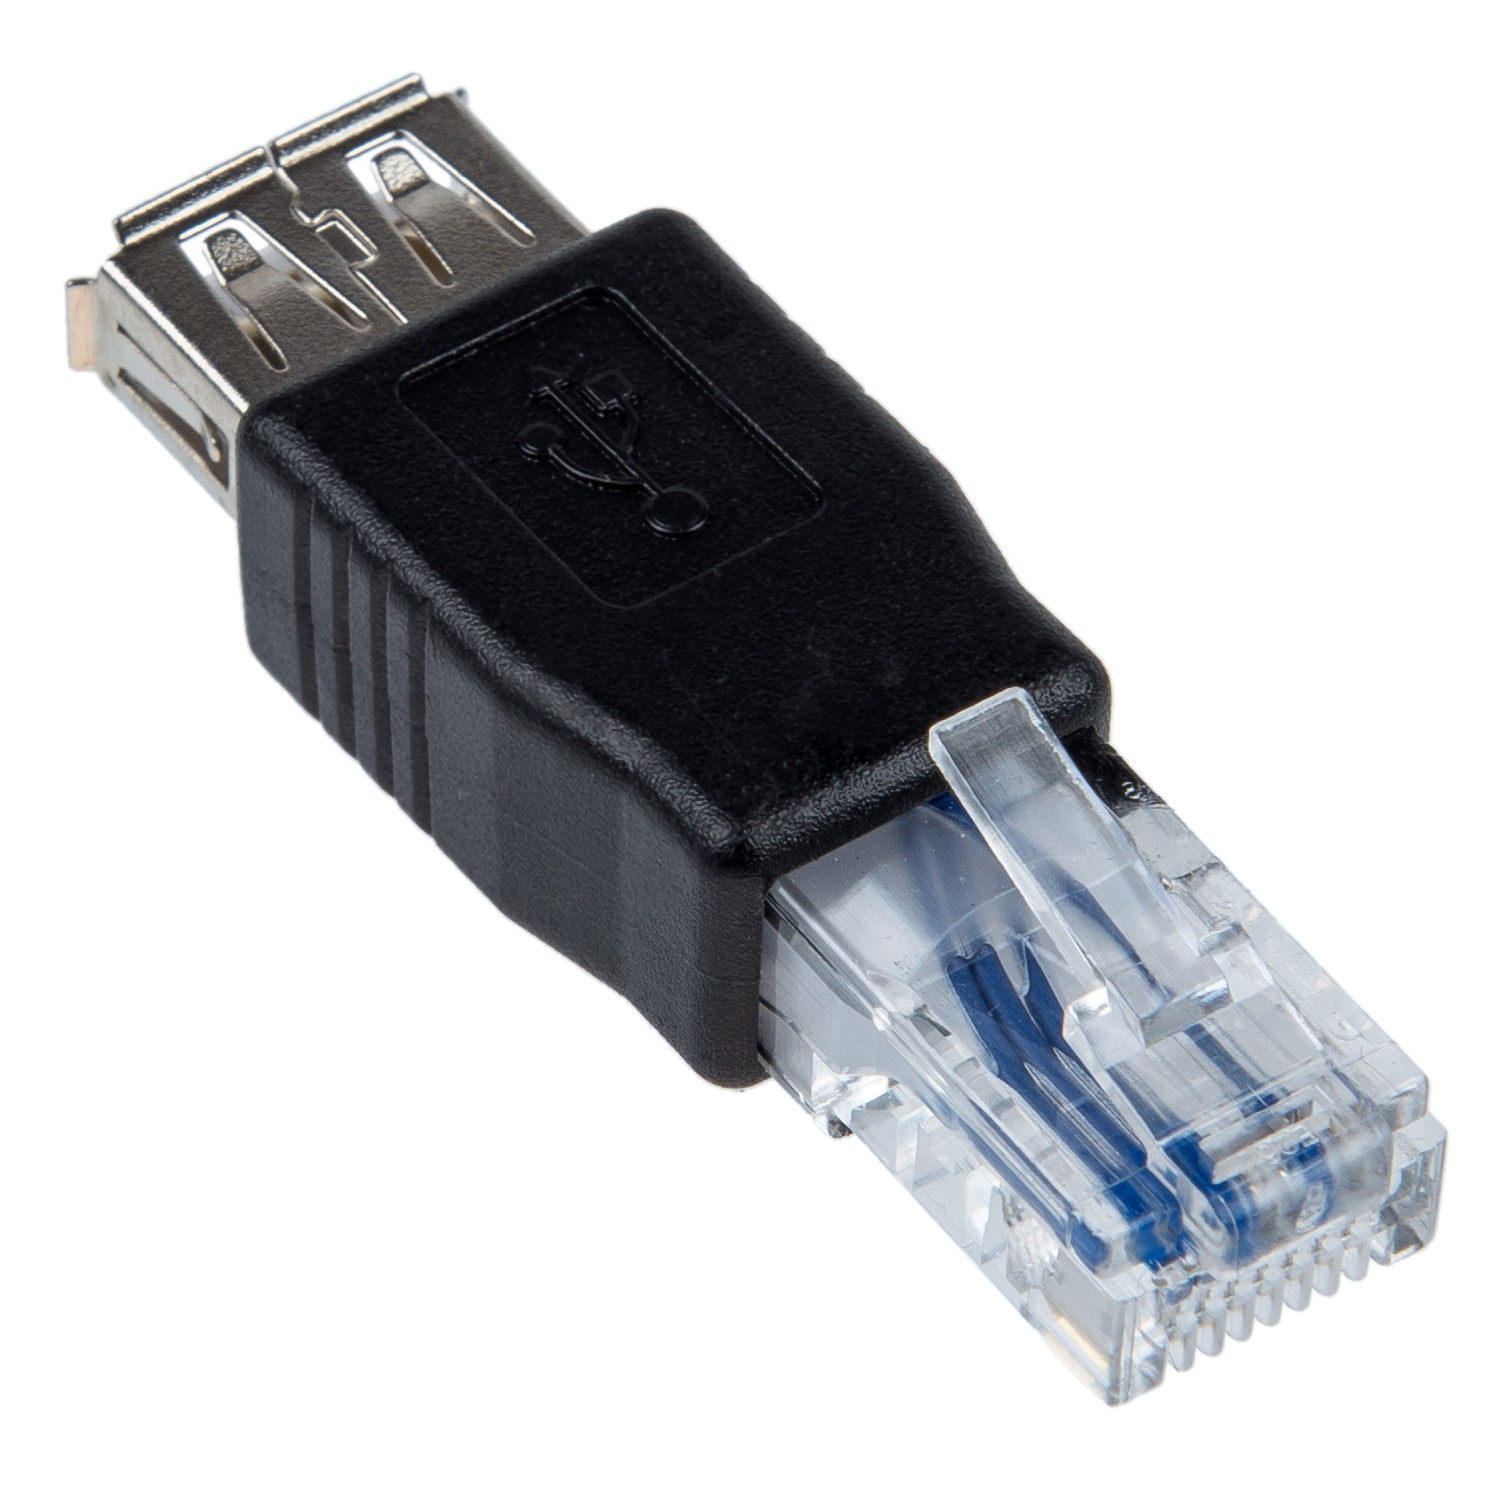 Адаптер rj45-male-USB-female. Юсб Ethernet адаптер rj45 переходник. Переходник USB Ethernet RJ-45 для модема. USB rj45 адаптер DEXP. Usb разъем папа